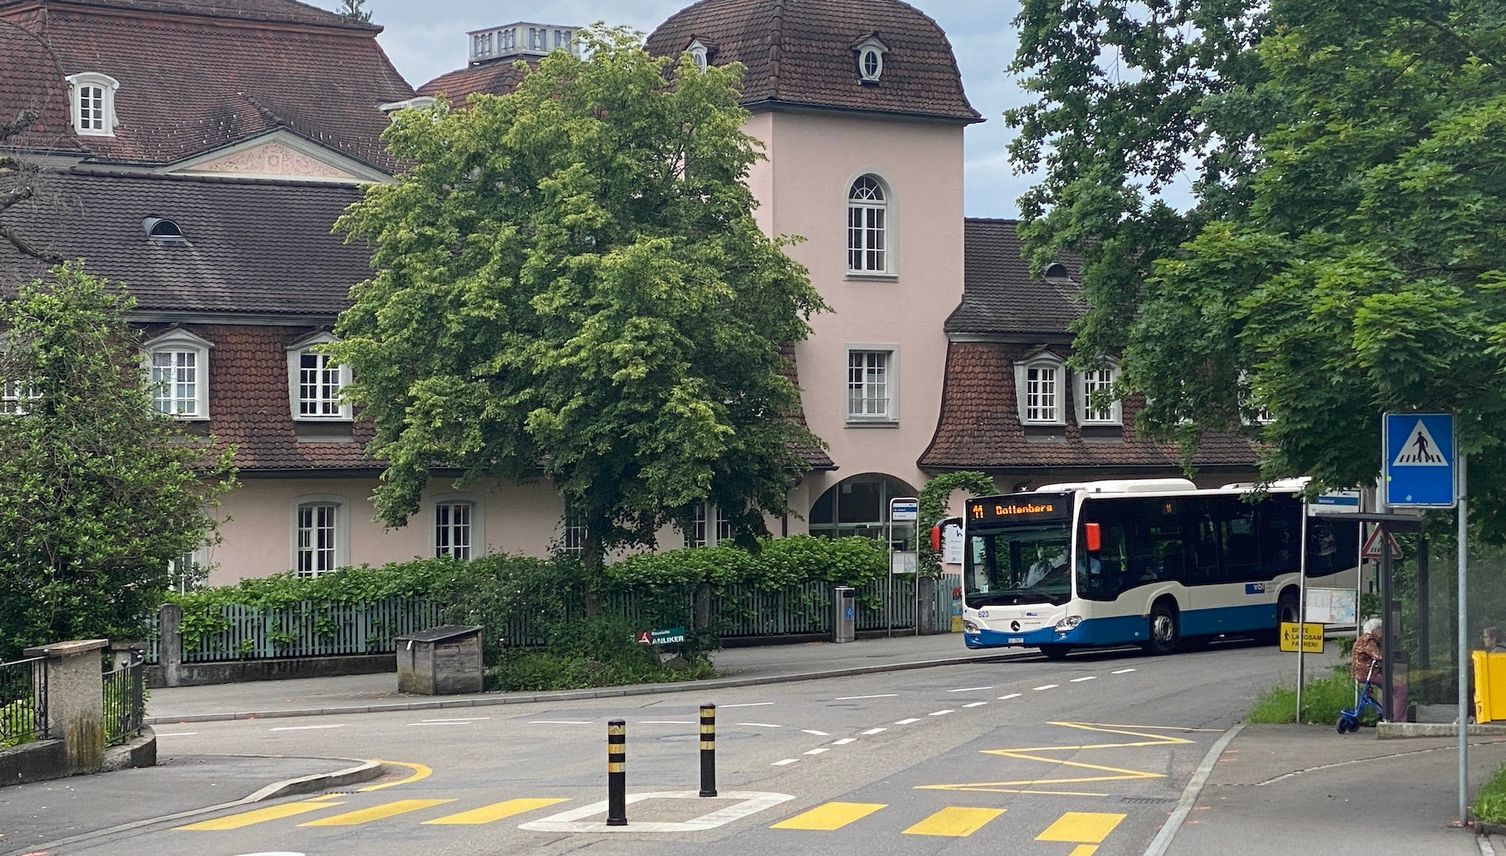 Stadt Luzern: Diese Strasse wird als nächstes aufgemotzt